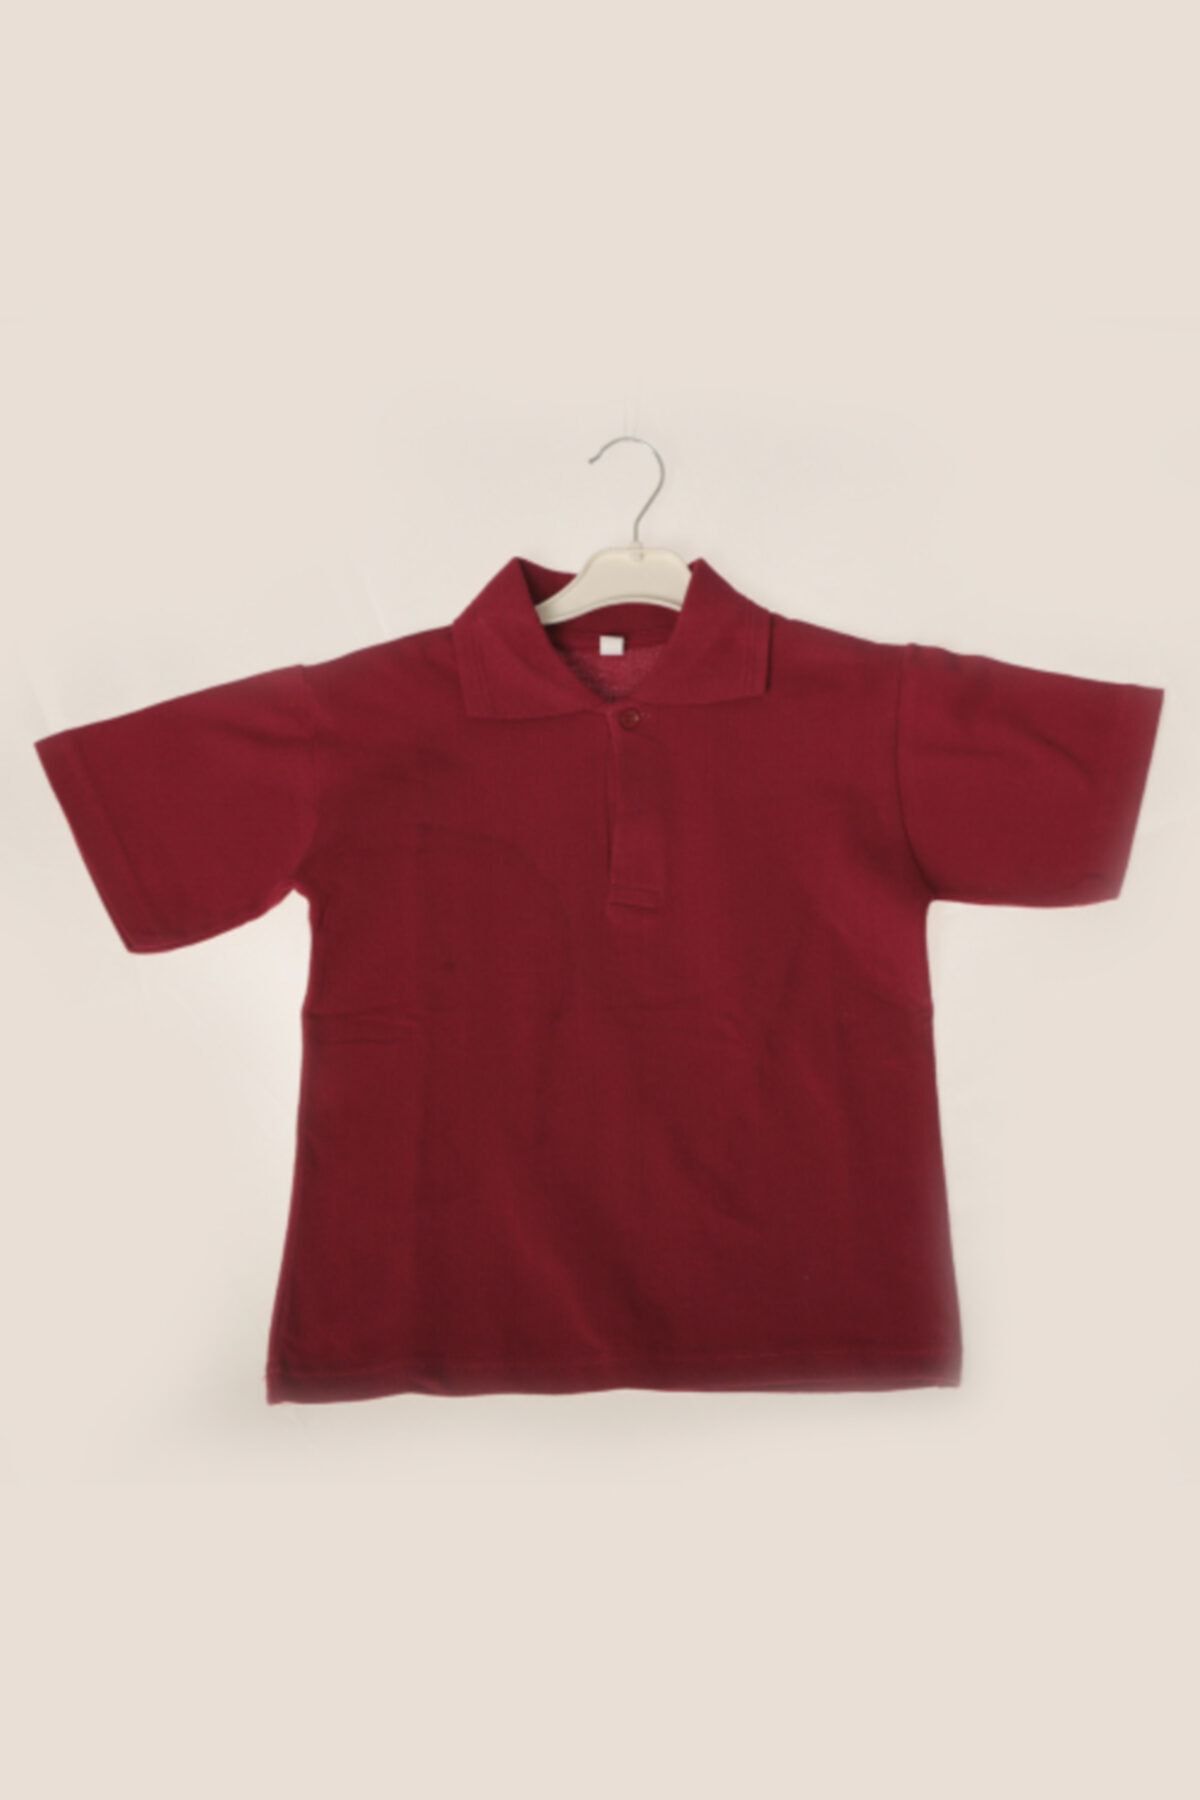 ÇÖLBAY Çocuk Bordo Polo Yaka Kısa Kol Düz Renk T-shirt